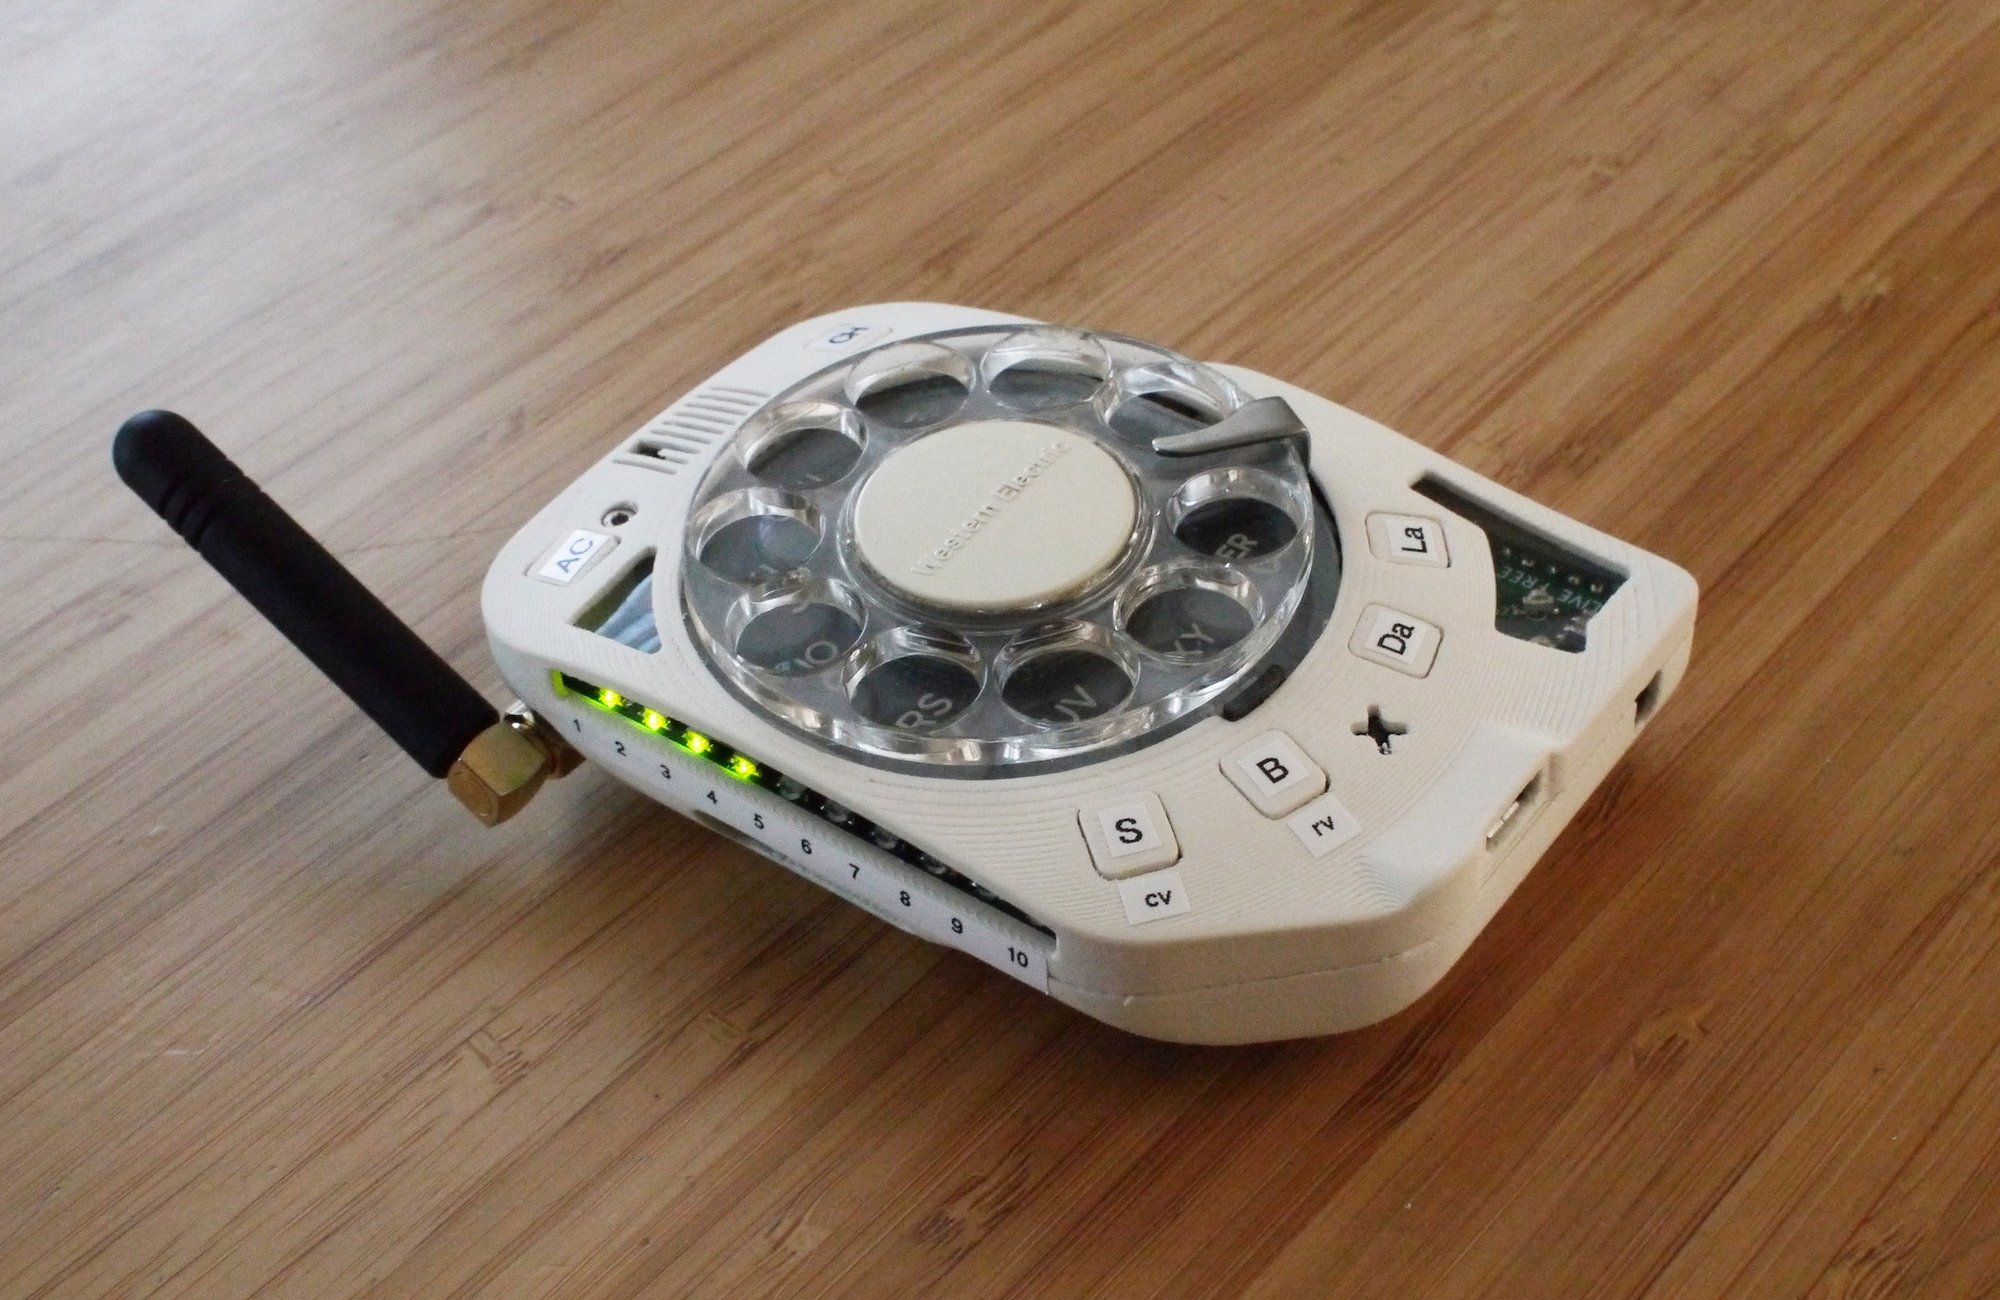 Un teléfono de bolsillo con dial rotatorio, perfecto para no escribir mensajes de texto